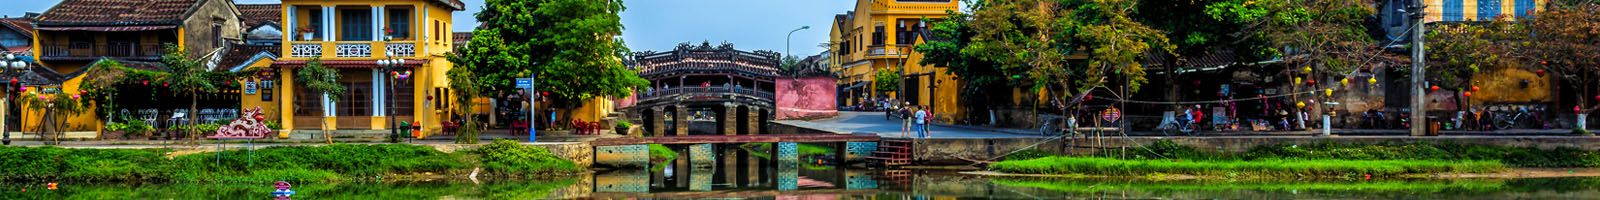 Các Tour Du lịch Miền Trung Giá Rẻ: Đà Nẵng, Hội An, Huế